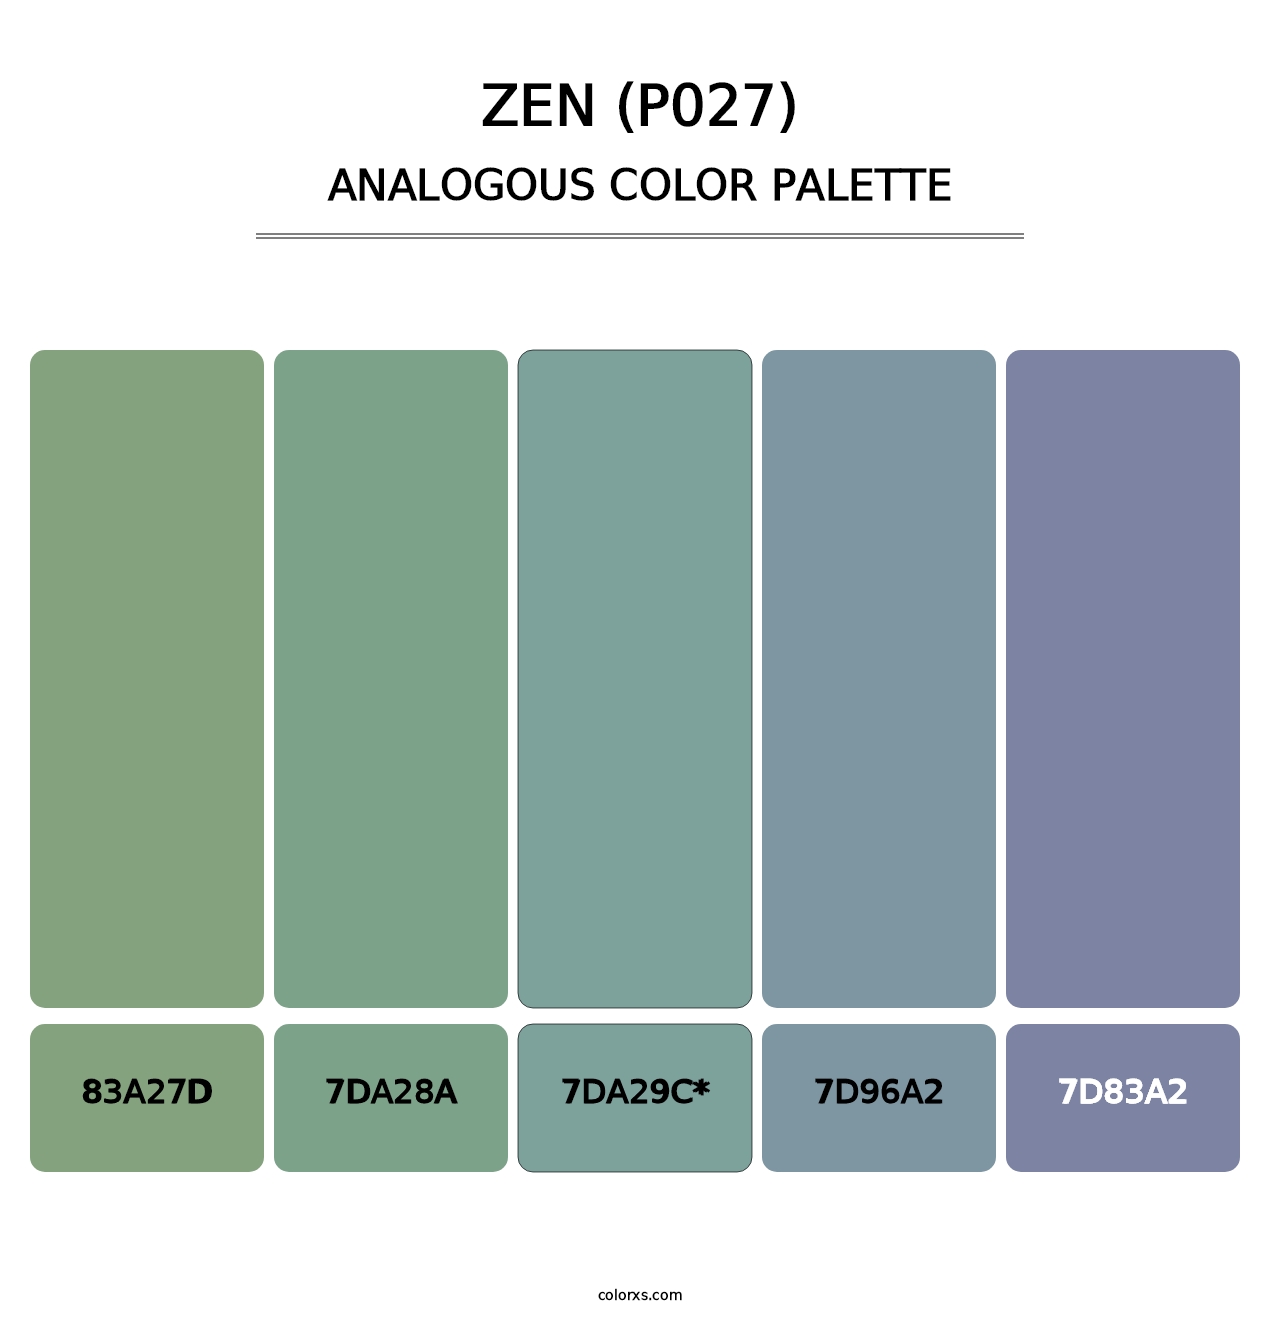 Zen (P027) - Analogous Color Palette